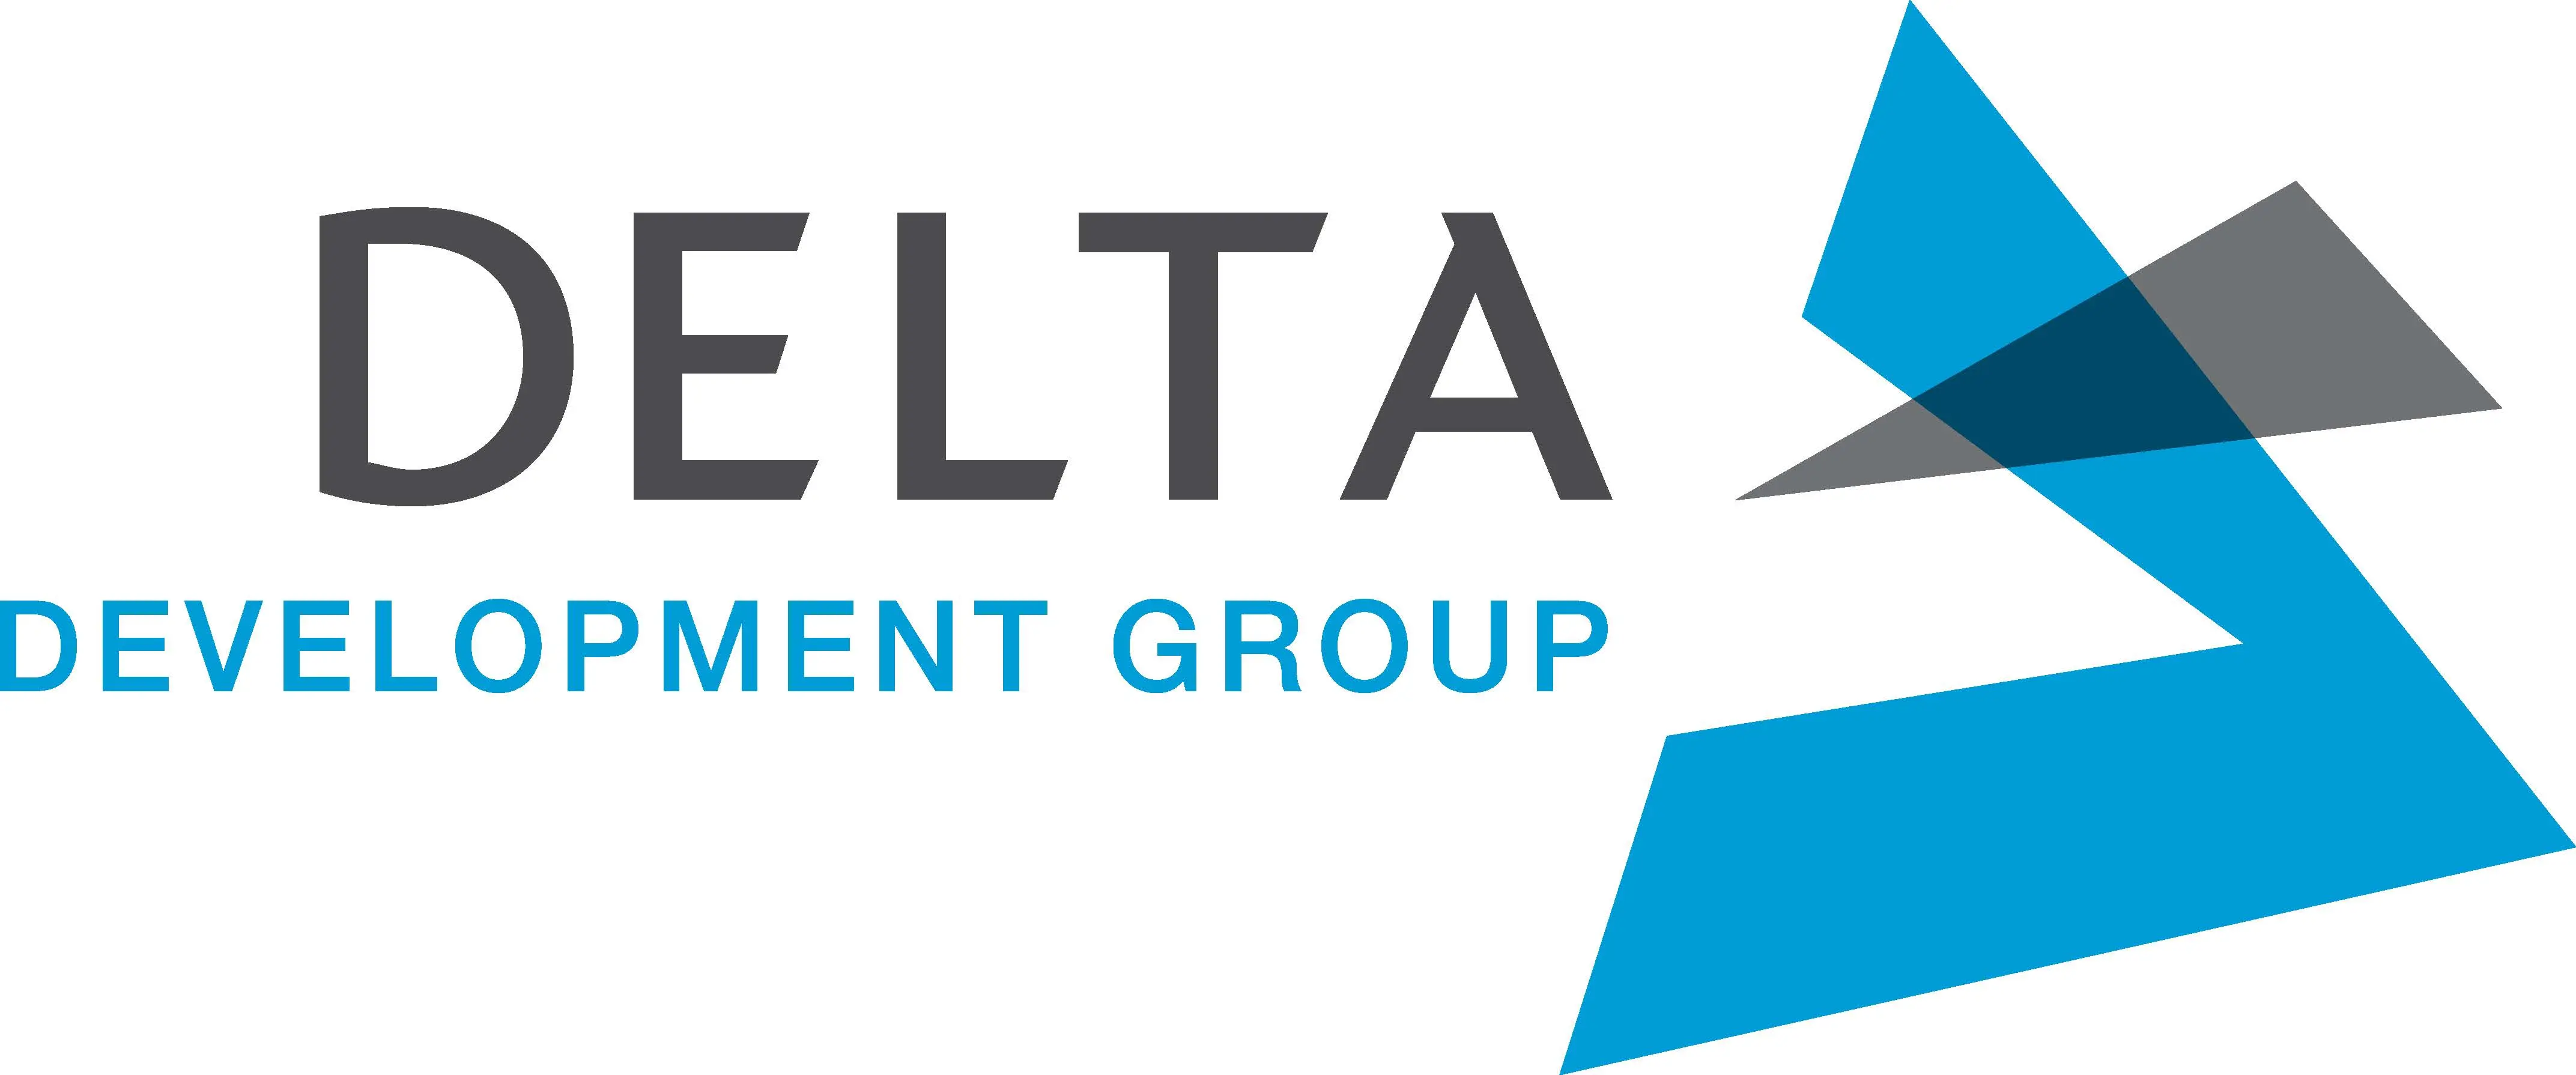 شركة دلتا جروب للتطوير العقاري Delta Development